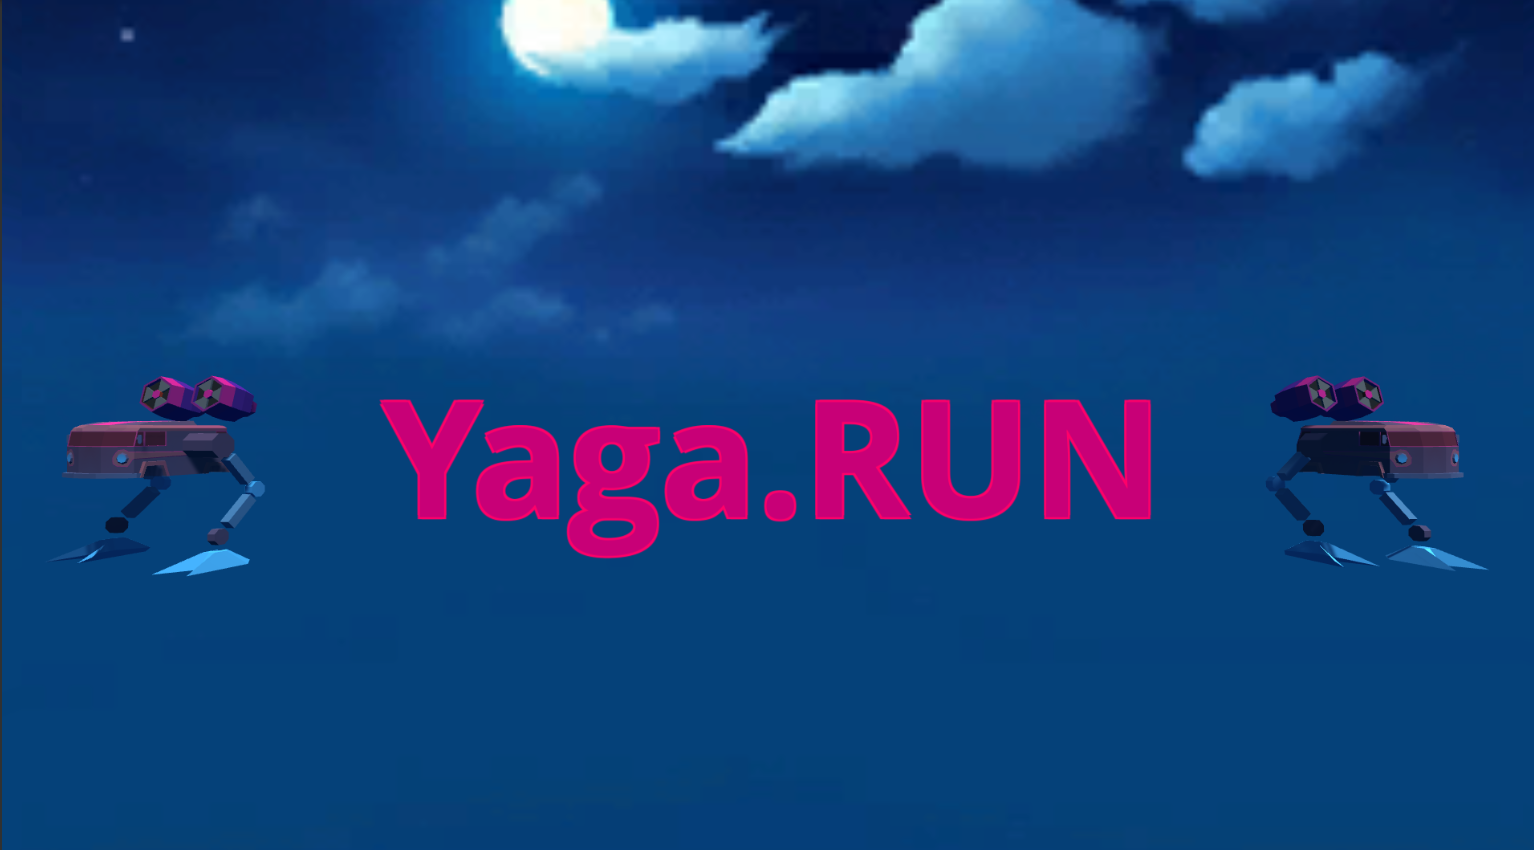 Yaga.Run